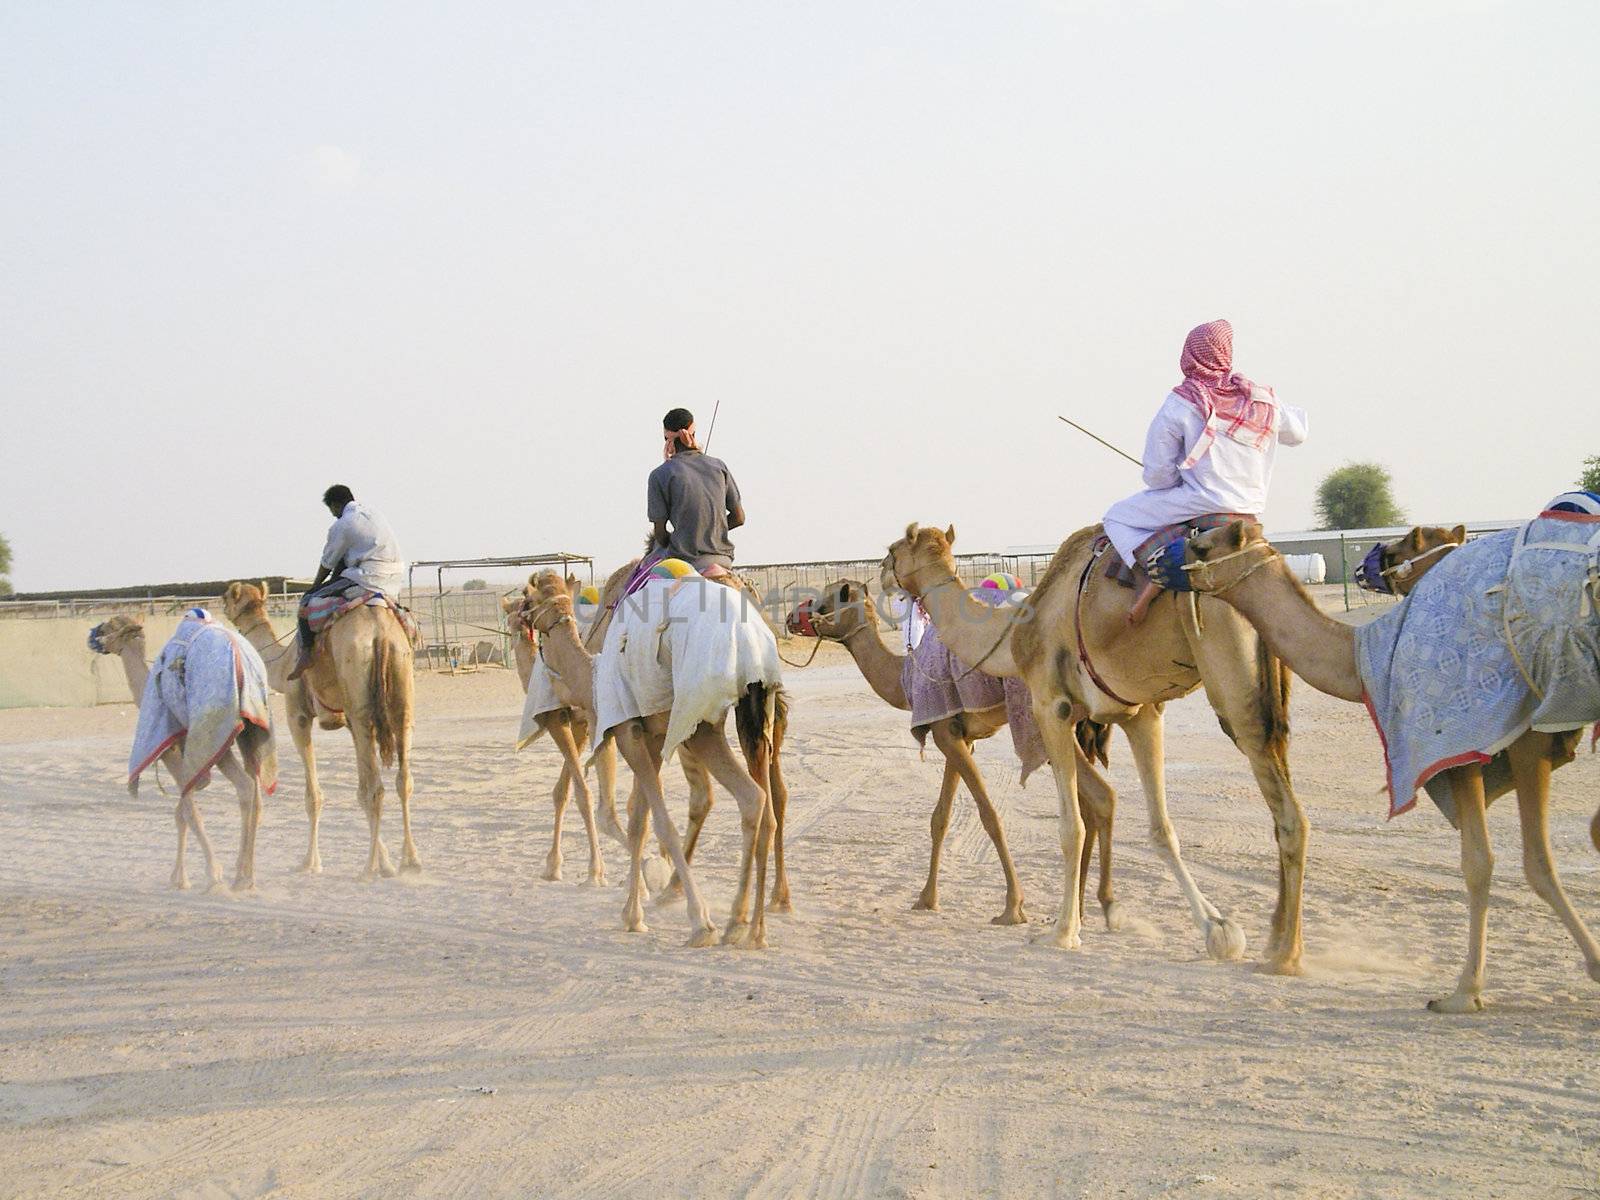 caravan of camels in the desert